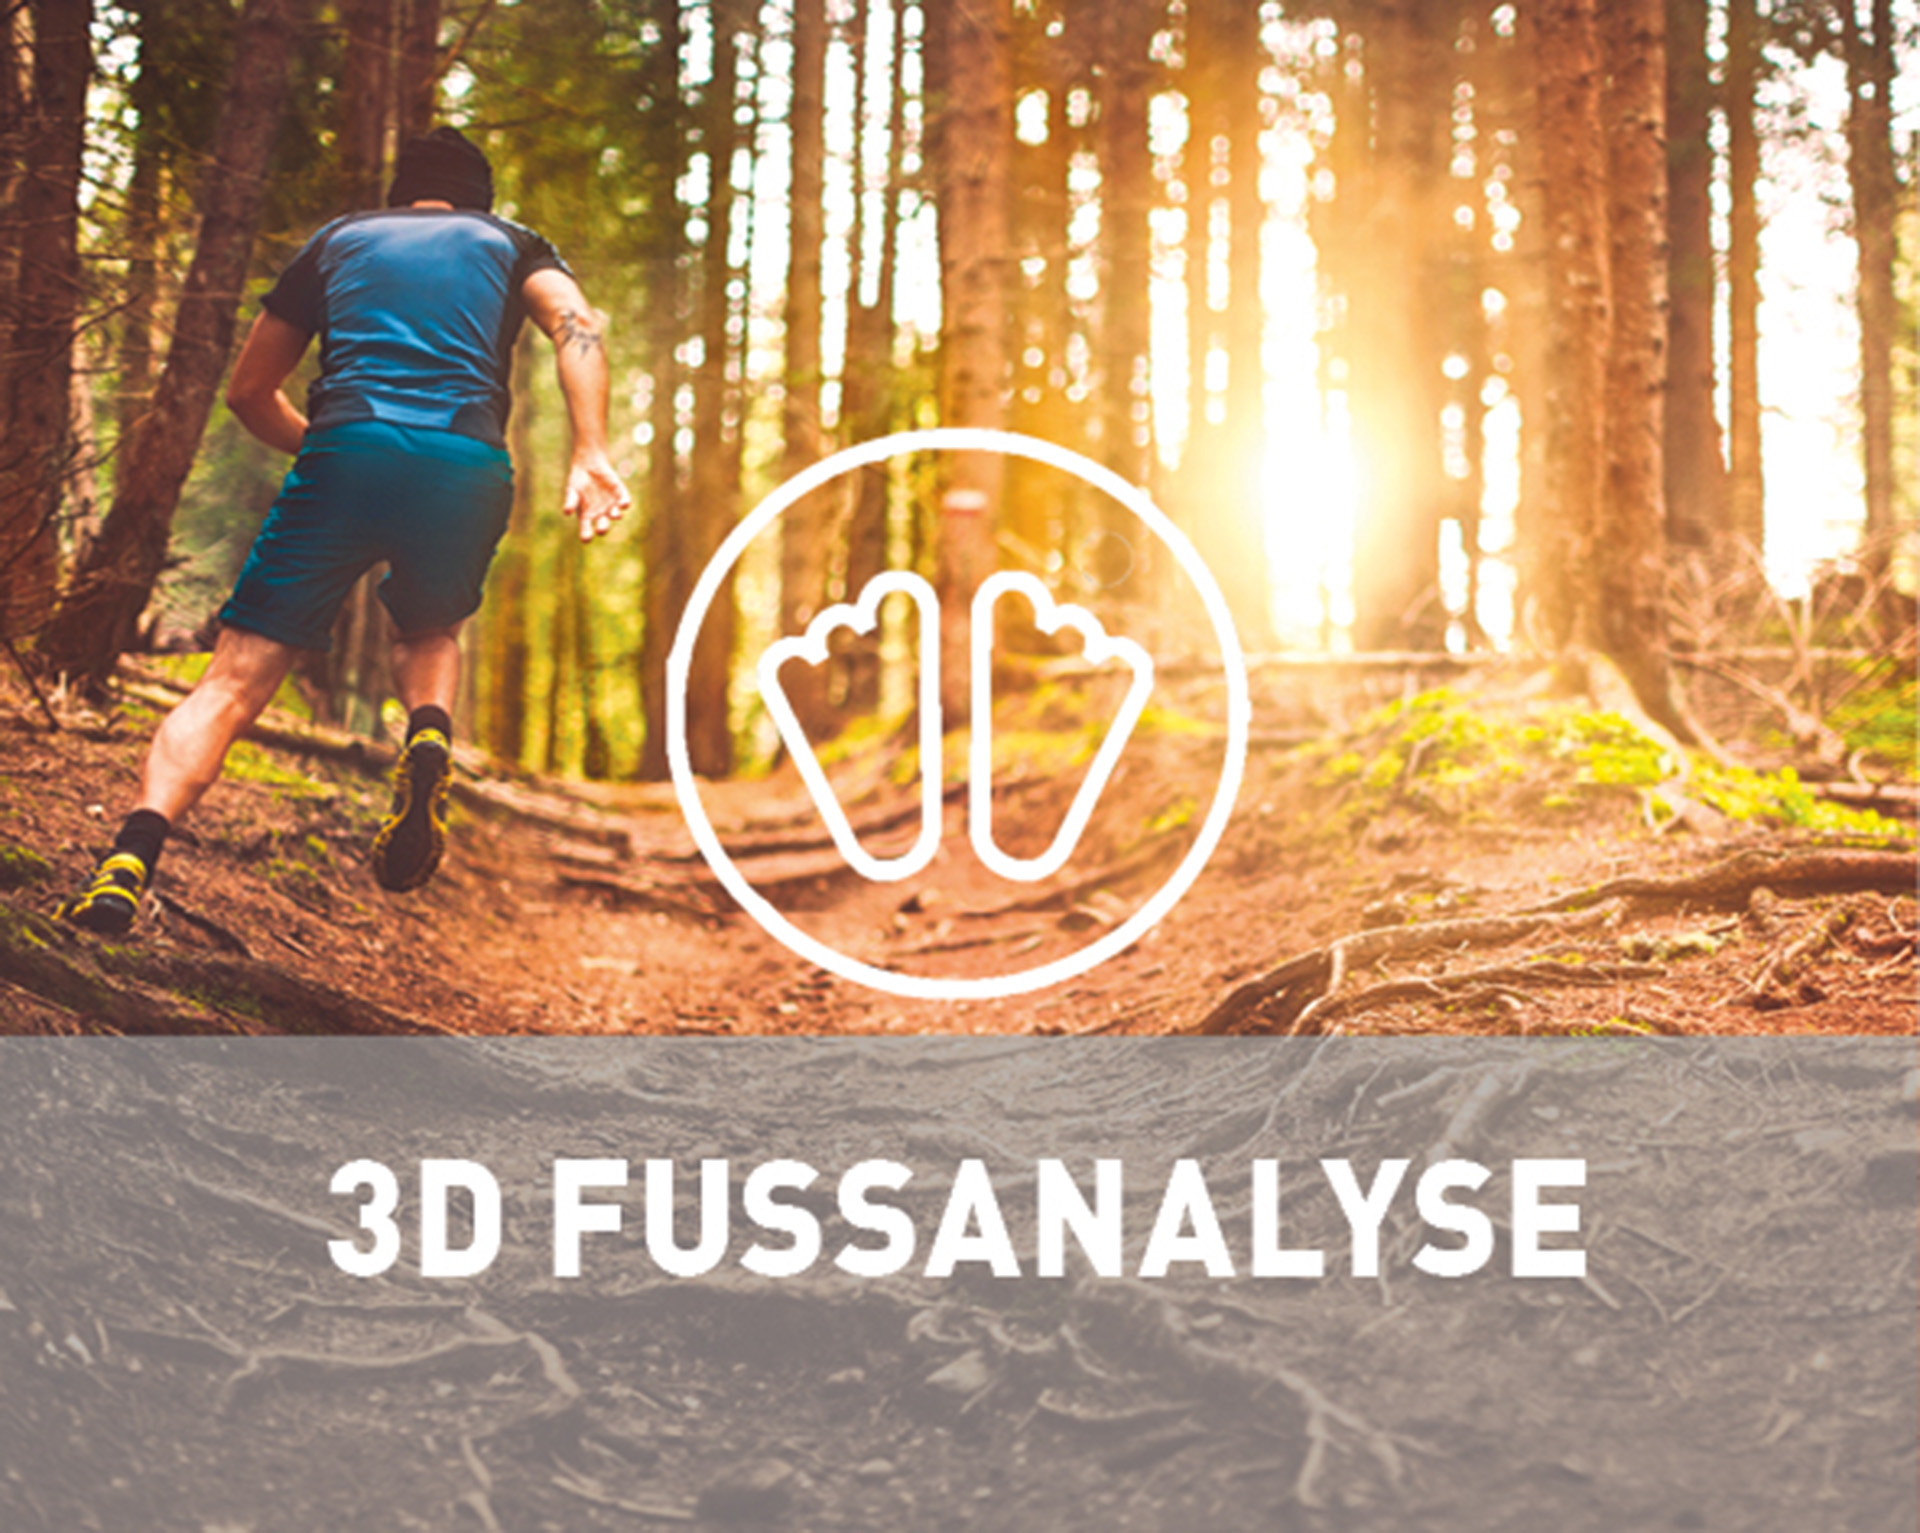 Mann beim Laufen im Wald Werbung 3DFussanalyse